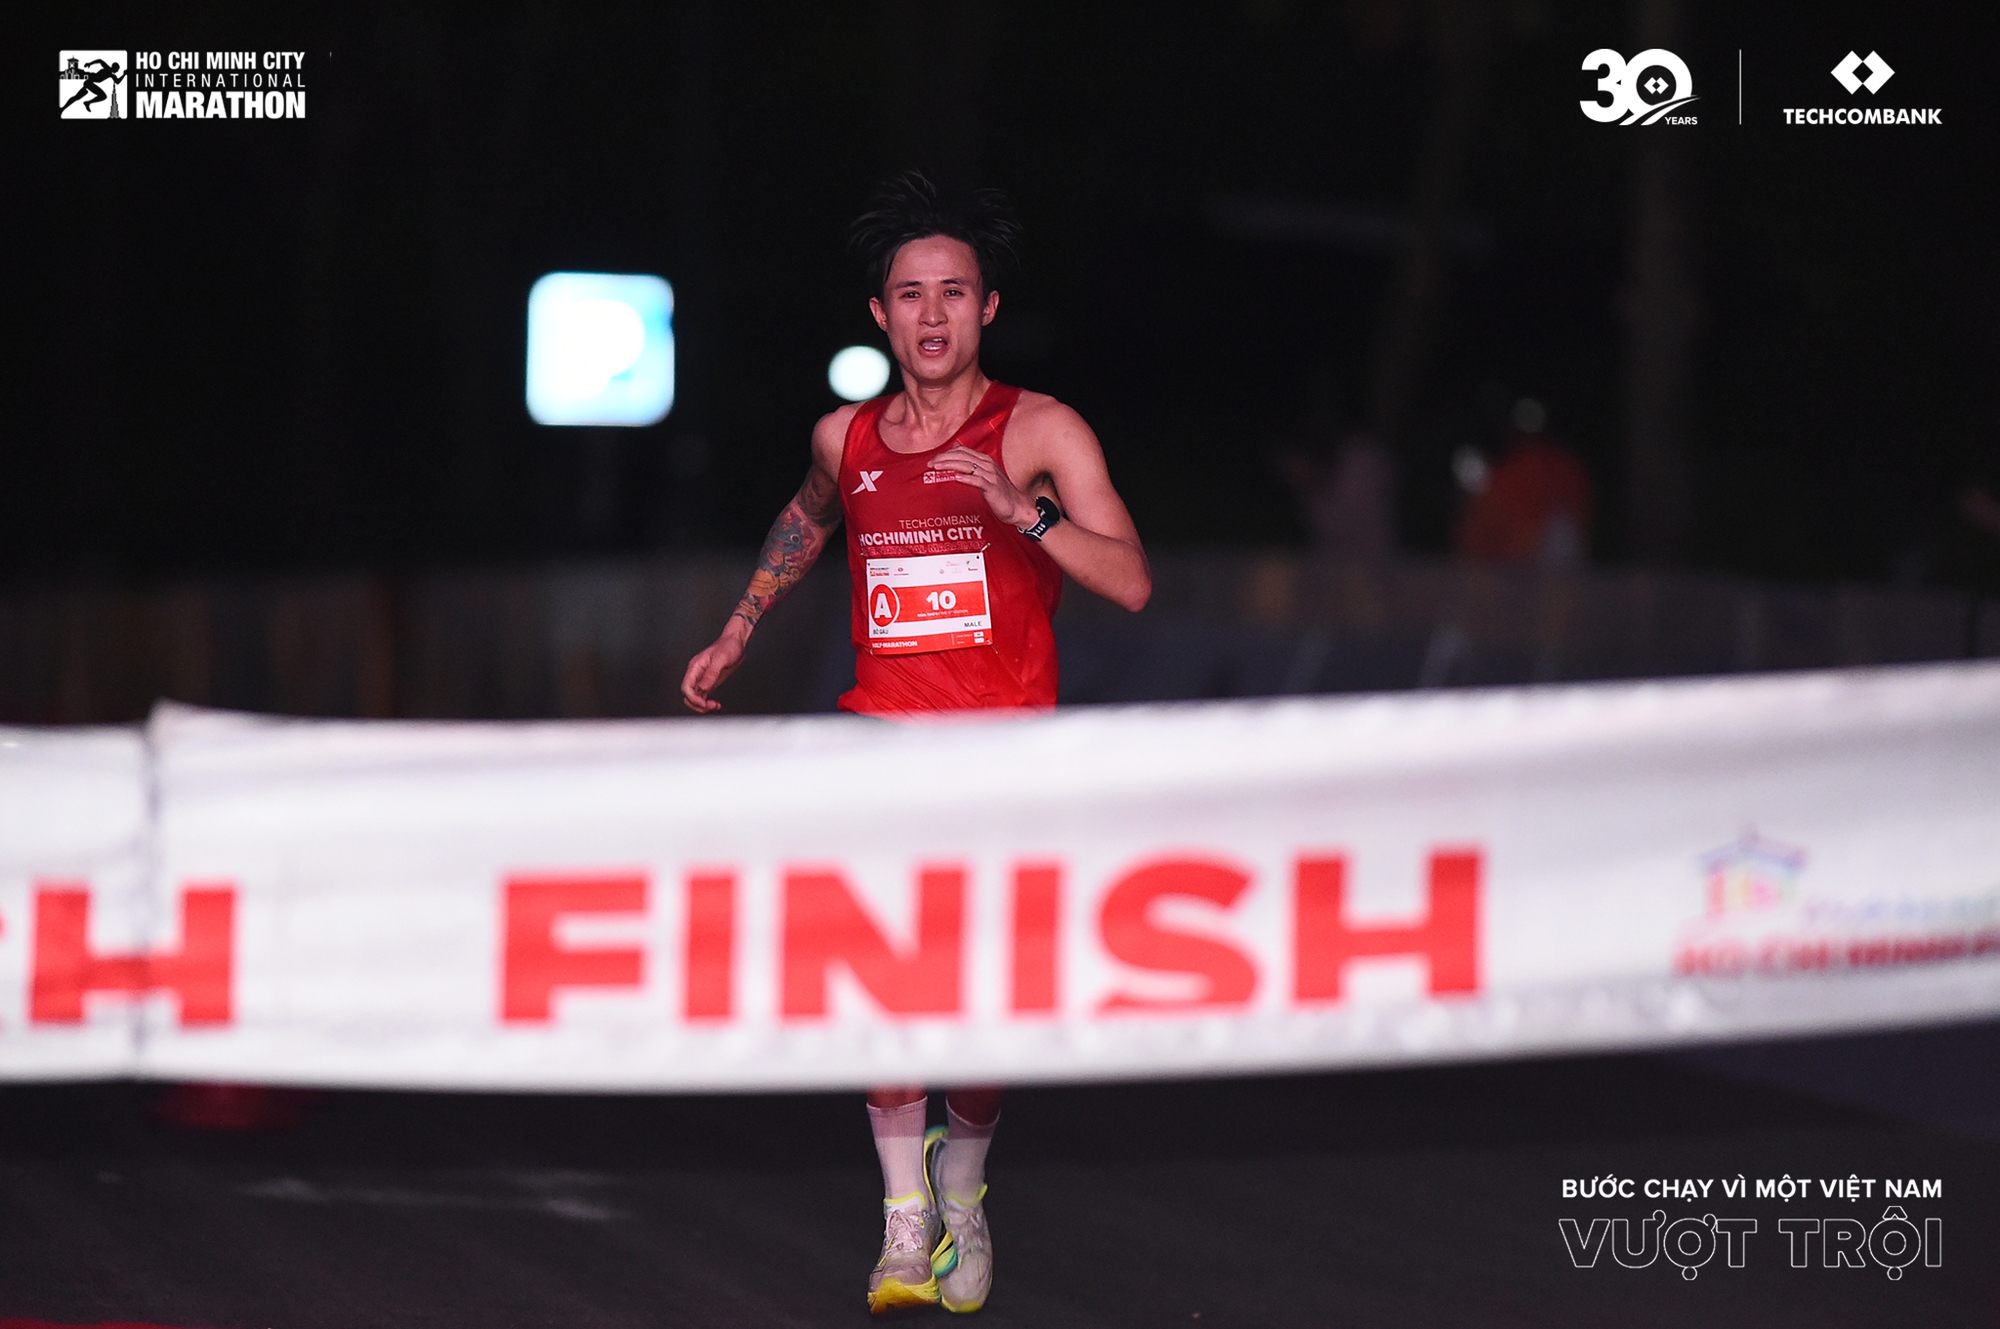 Các nữ Runner Việt Nam vượt trội trong giải Marathon Quốc tế thành phố Hồ Chí Minh Techcombank mùa thứ 6- Ảnh 3.